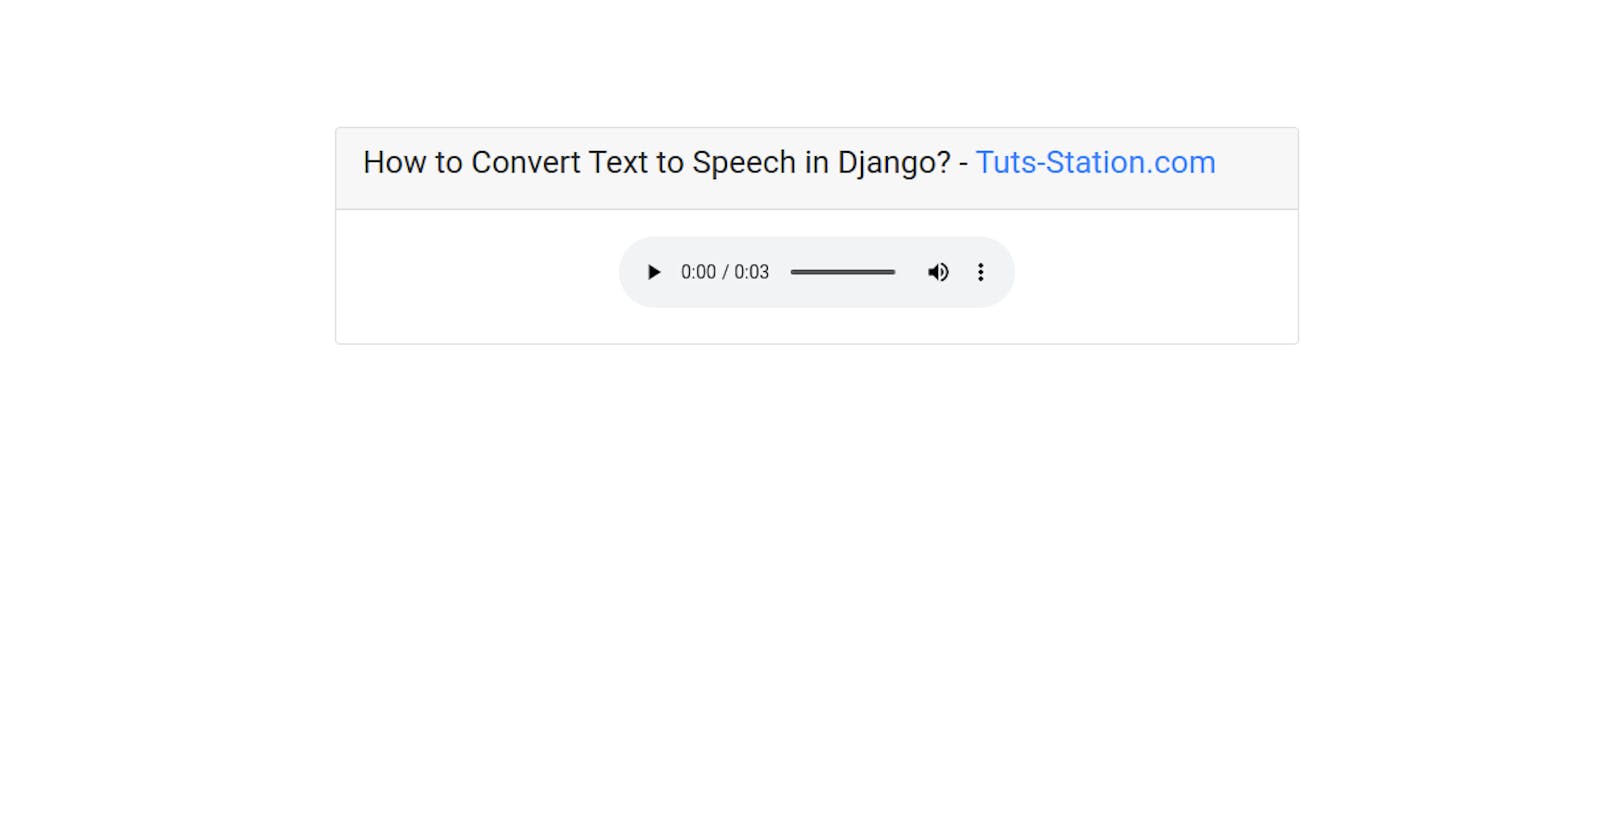 How to Convert Text to Speech in Django?